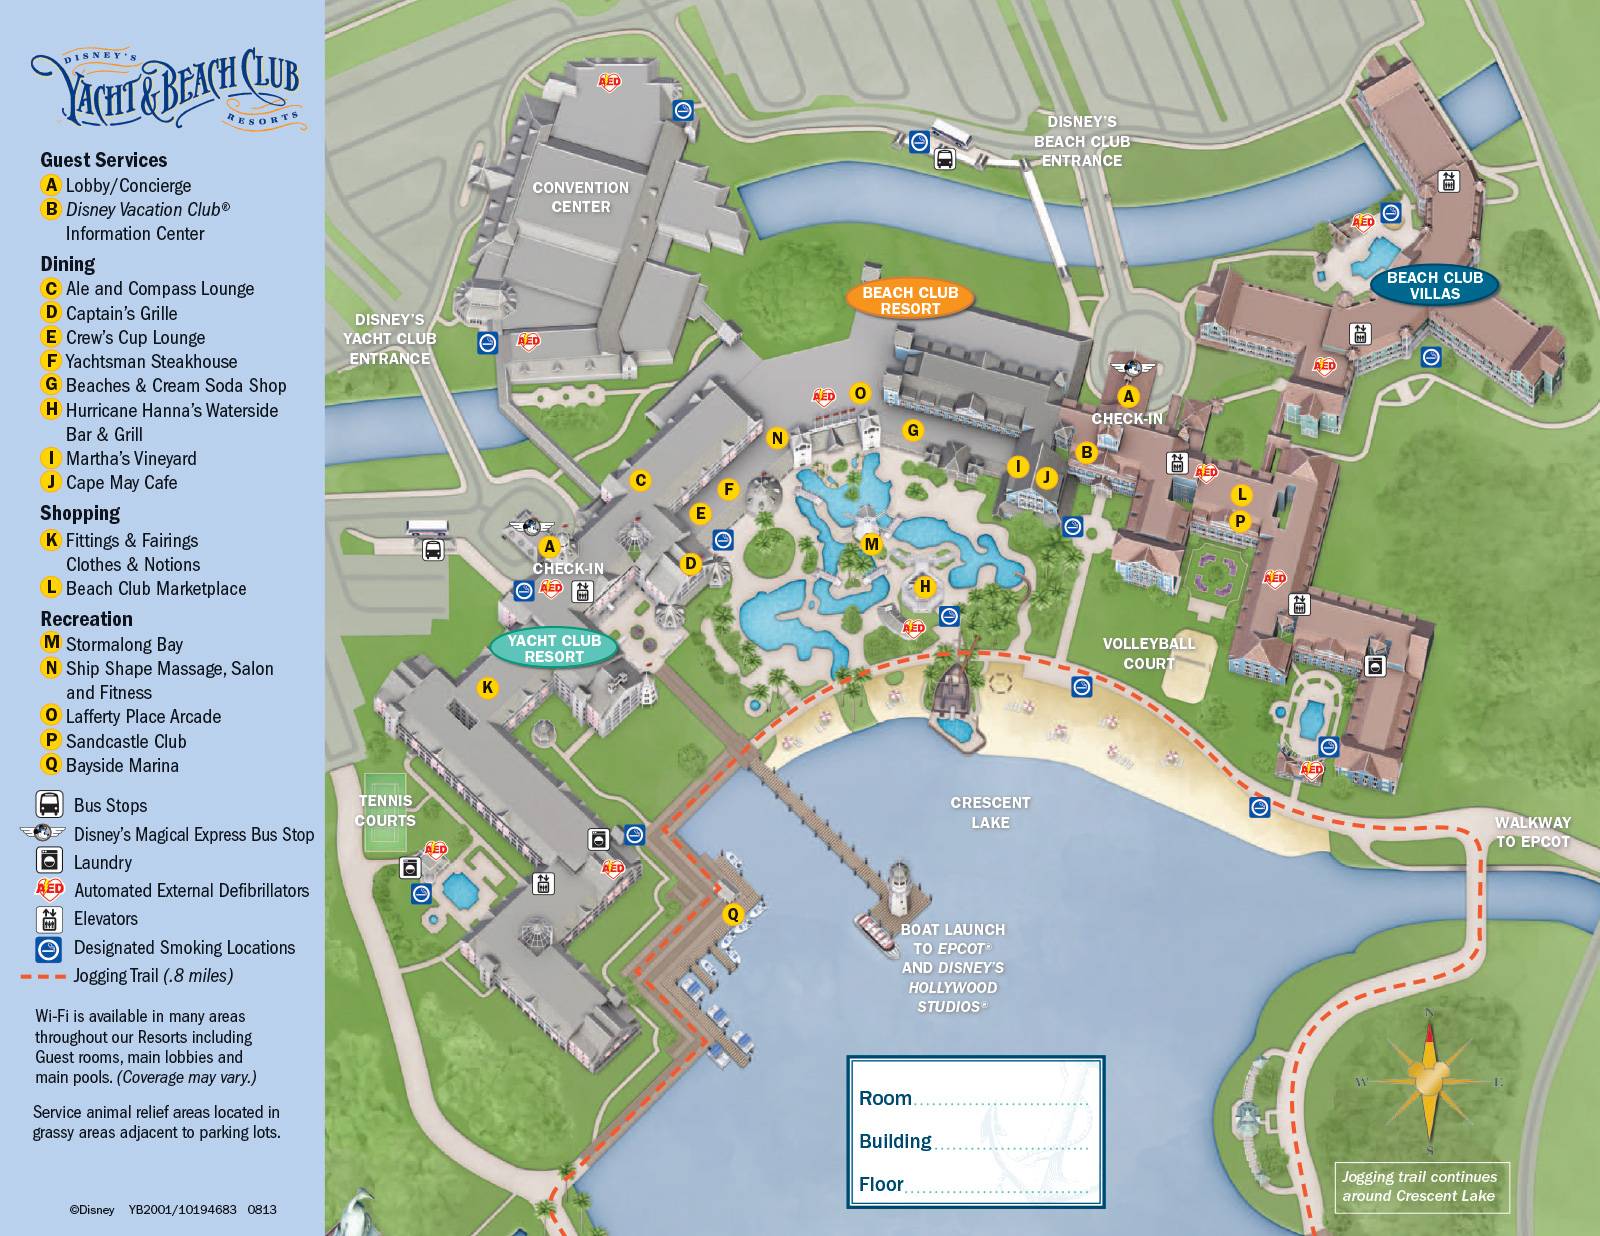 New look 2013 Resort Hotel maps